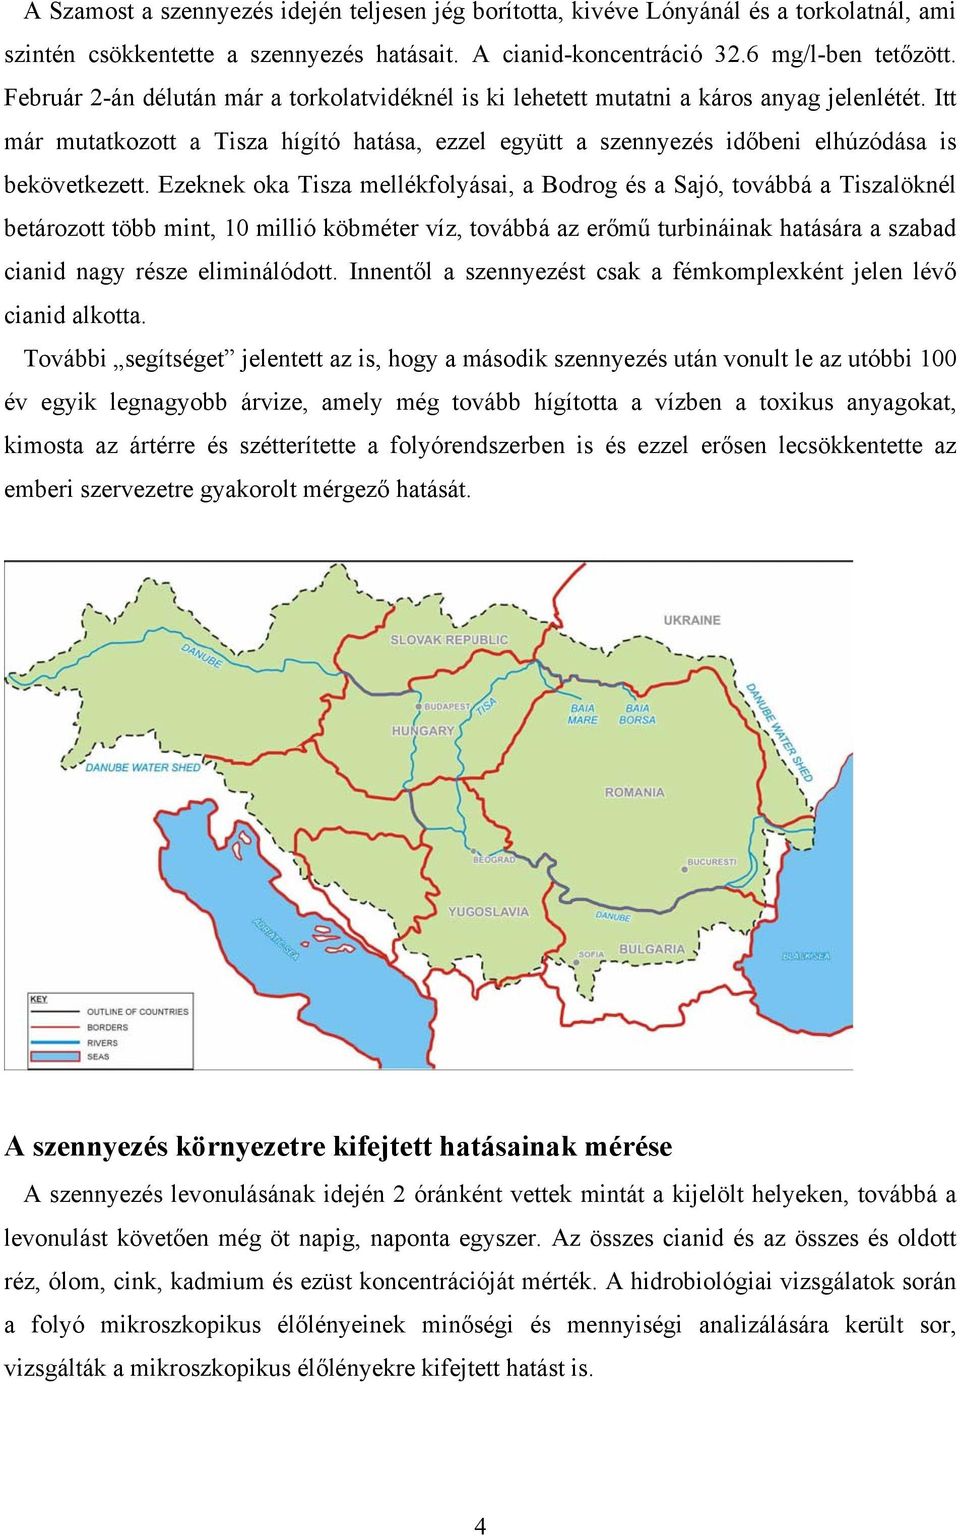 Tiszai ciánszennyezés. Márkus Marietta - PDF Free Download